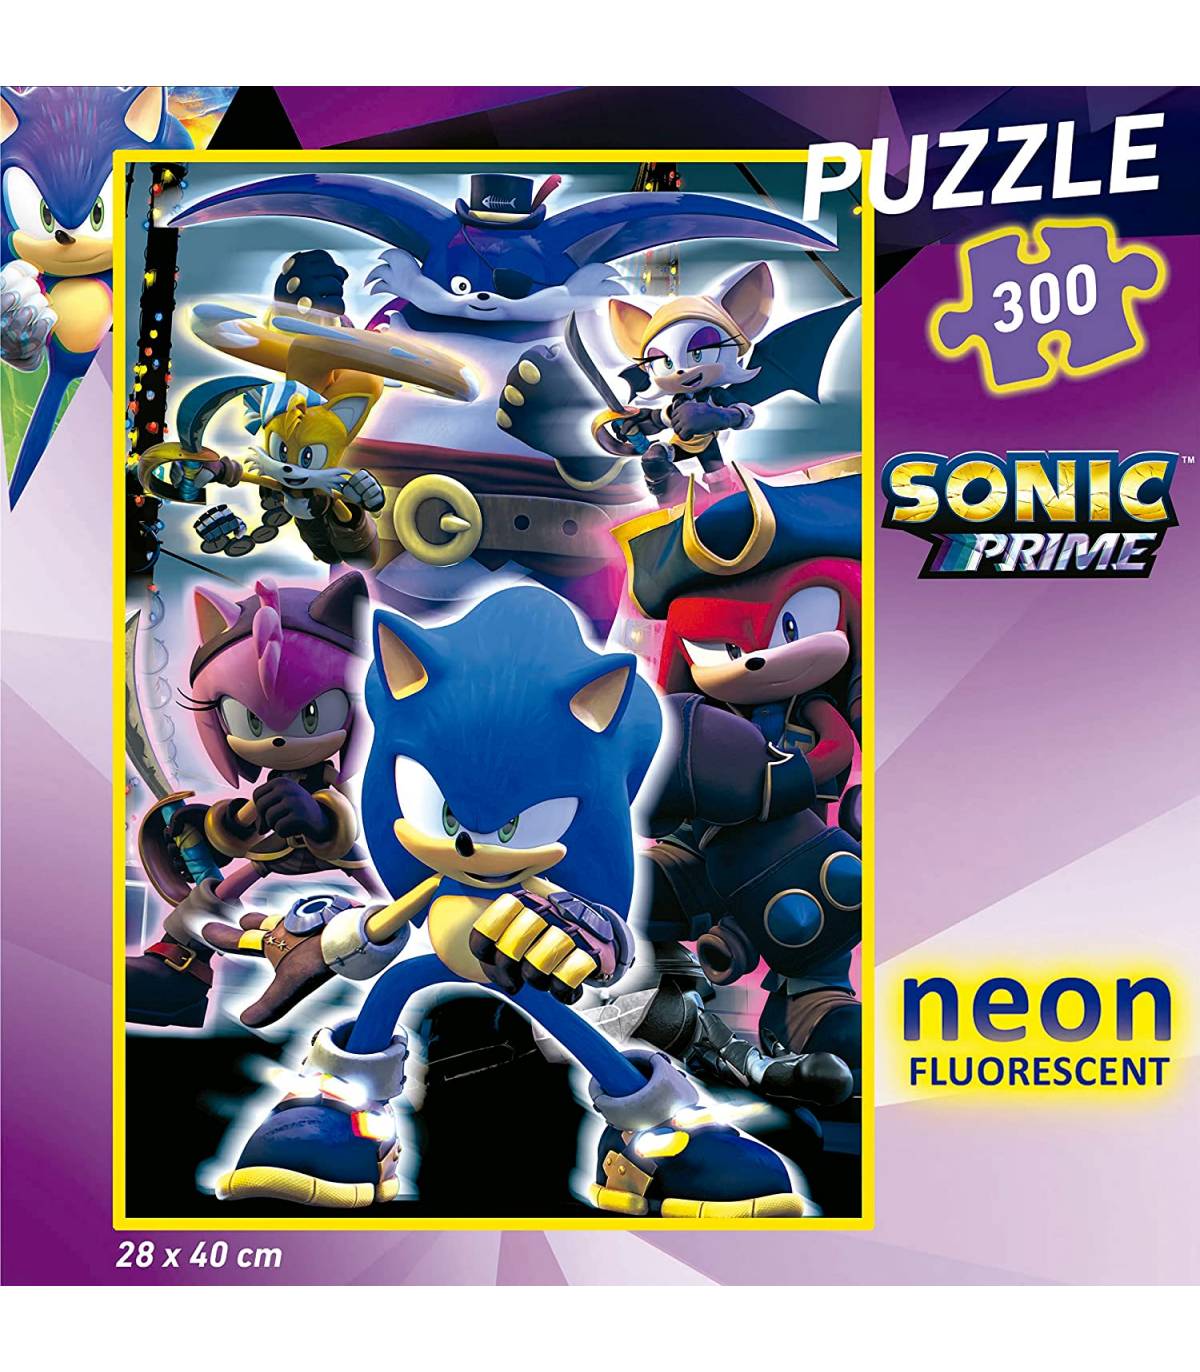 Educa Borras - Puzzle infantil Sonic Prime Neon de 300 peças ㅤ